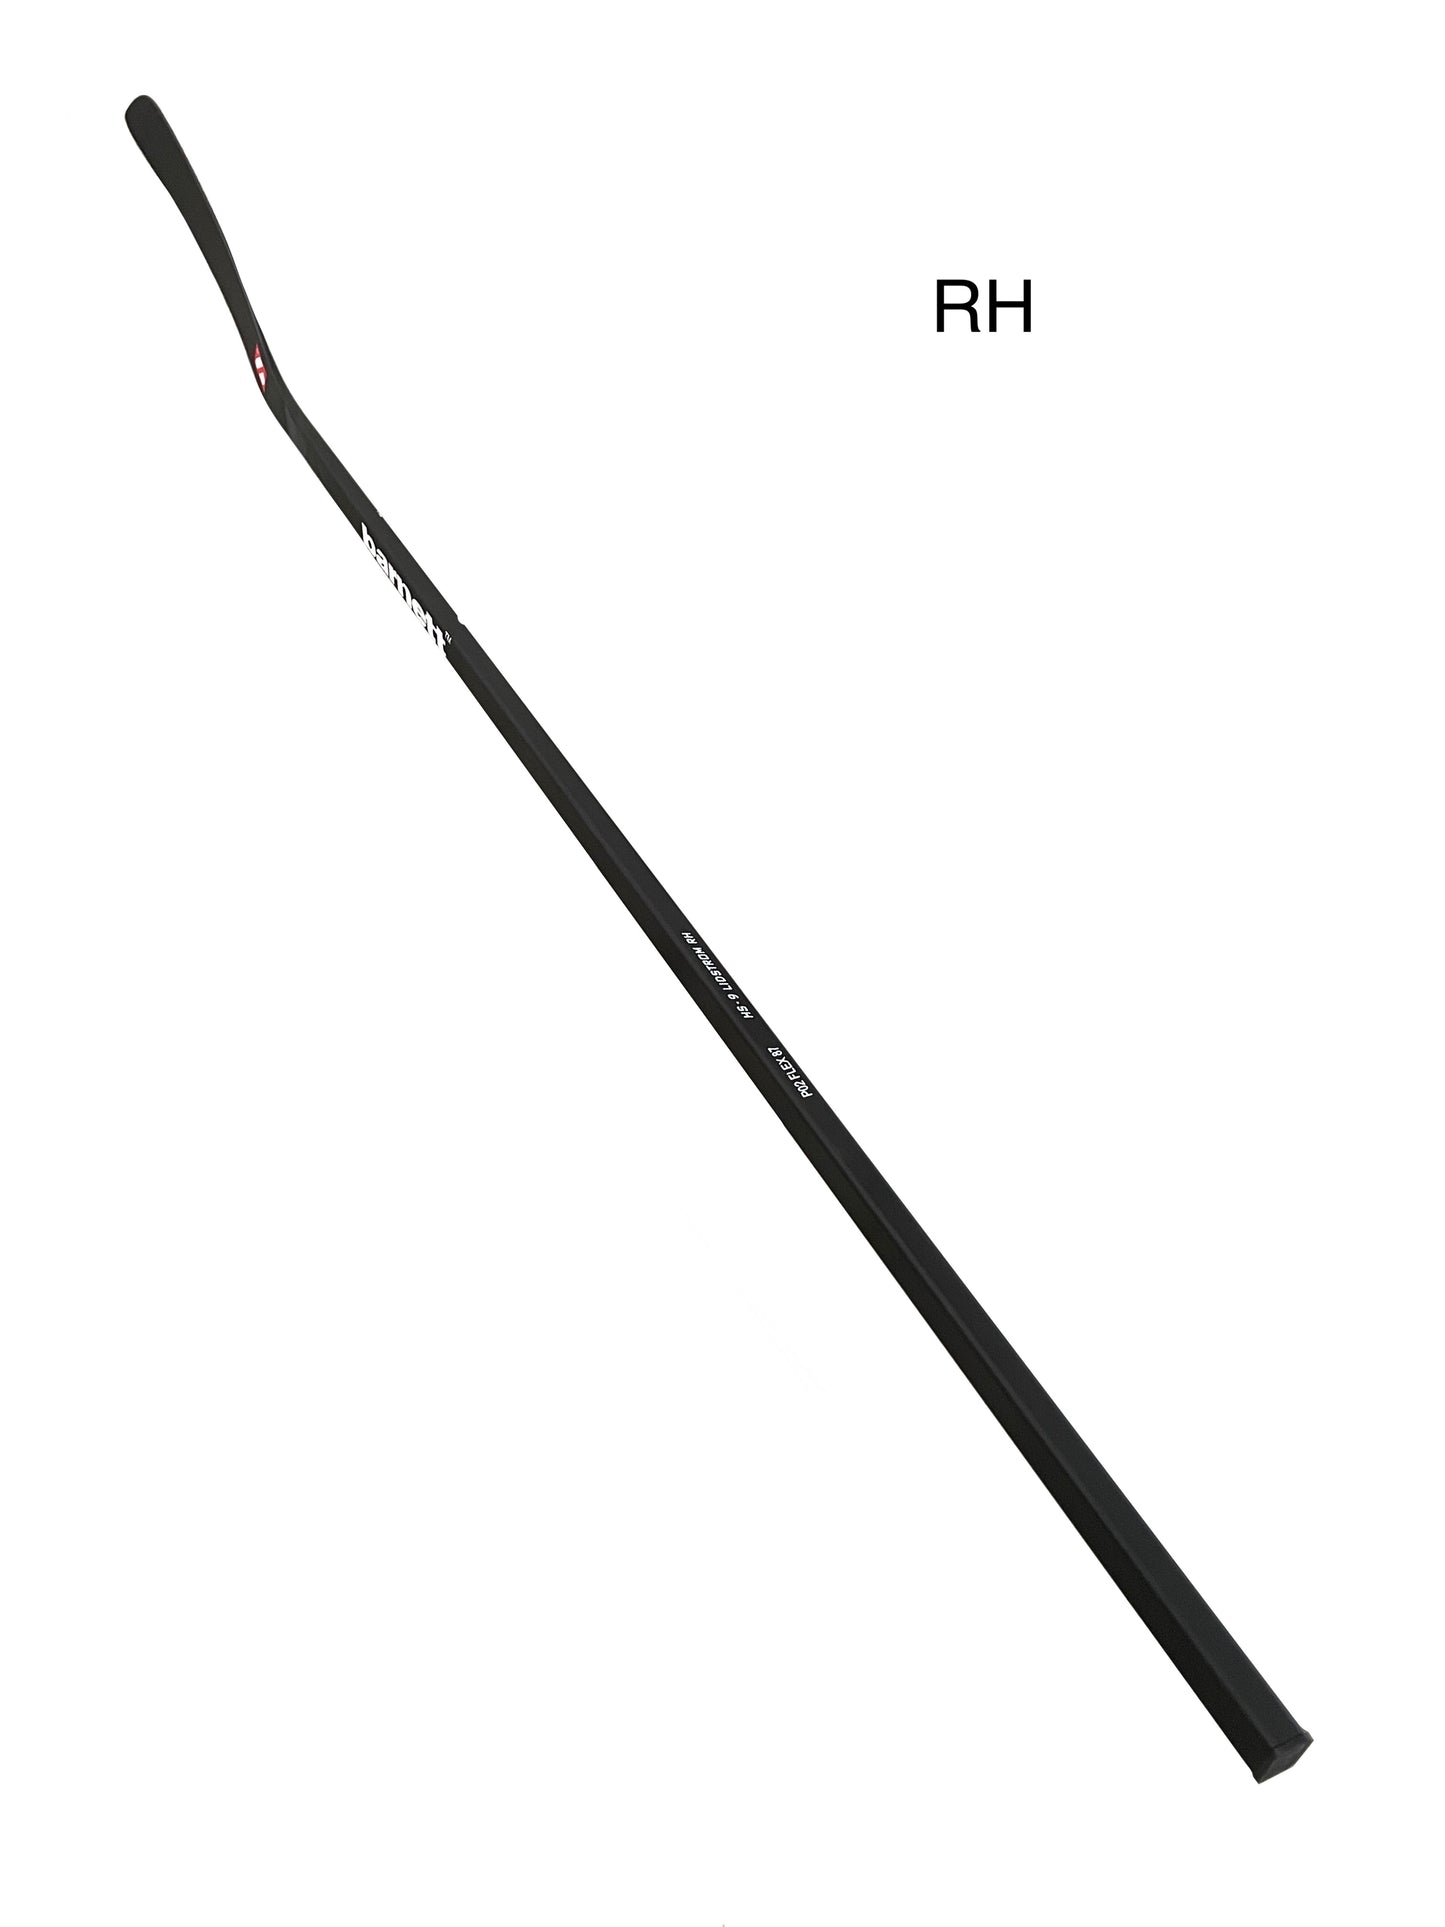 HS-7 Hockeyschläger aus Kohlenstoff mit hohem Modul